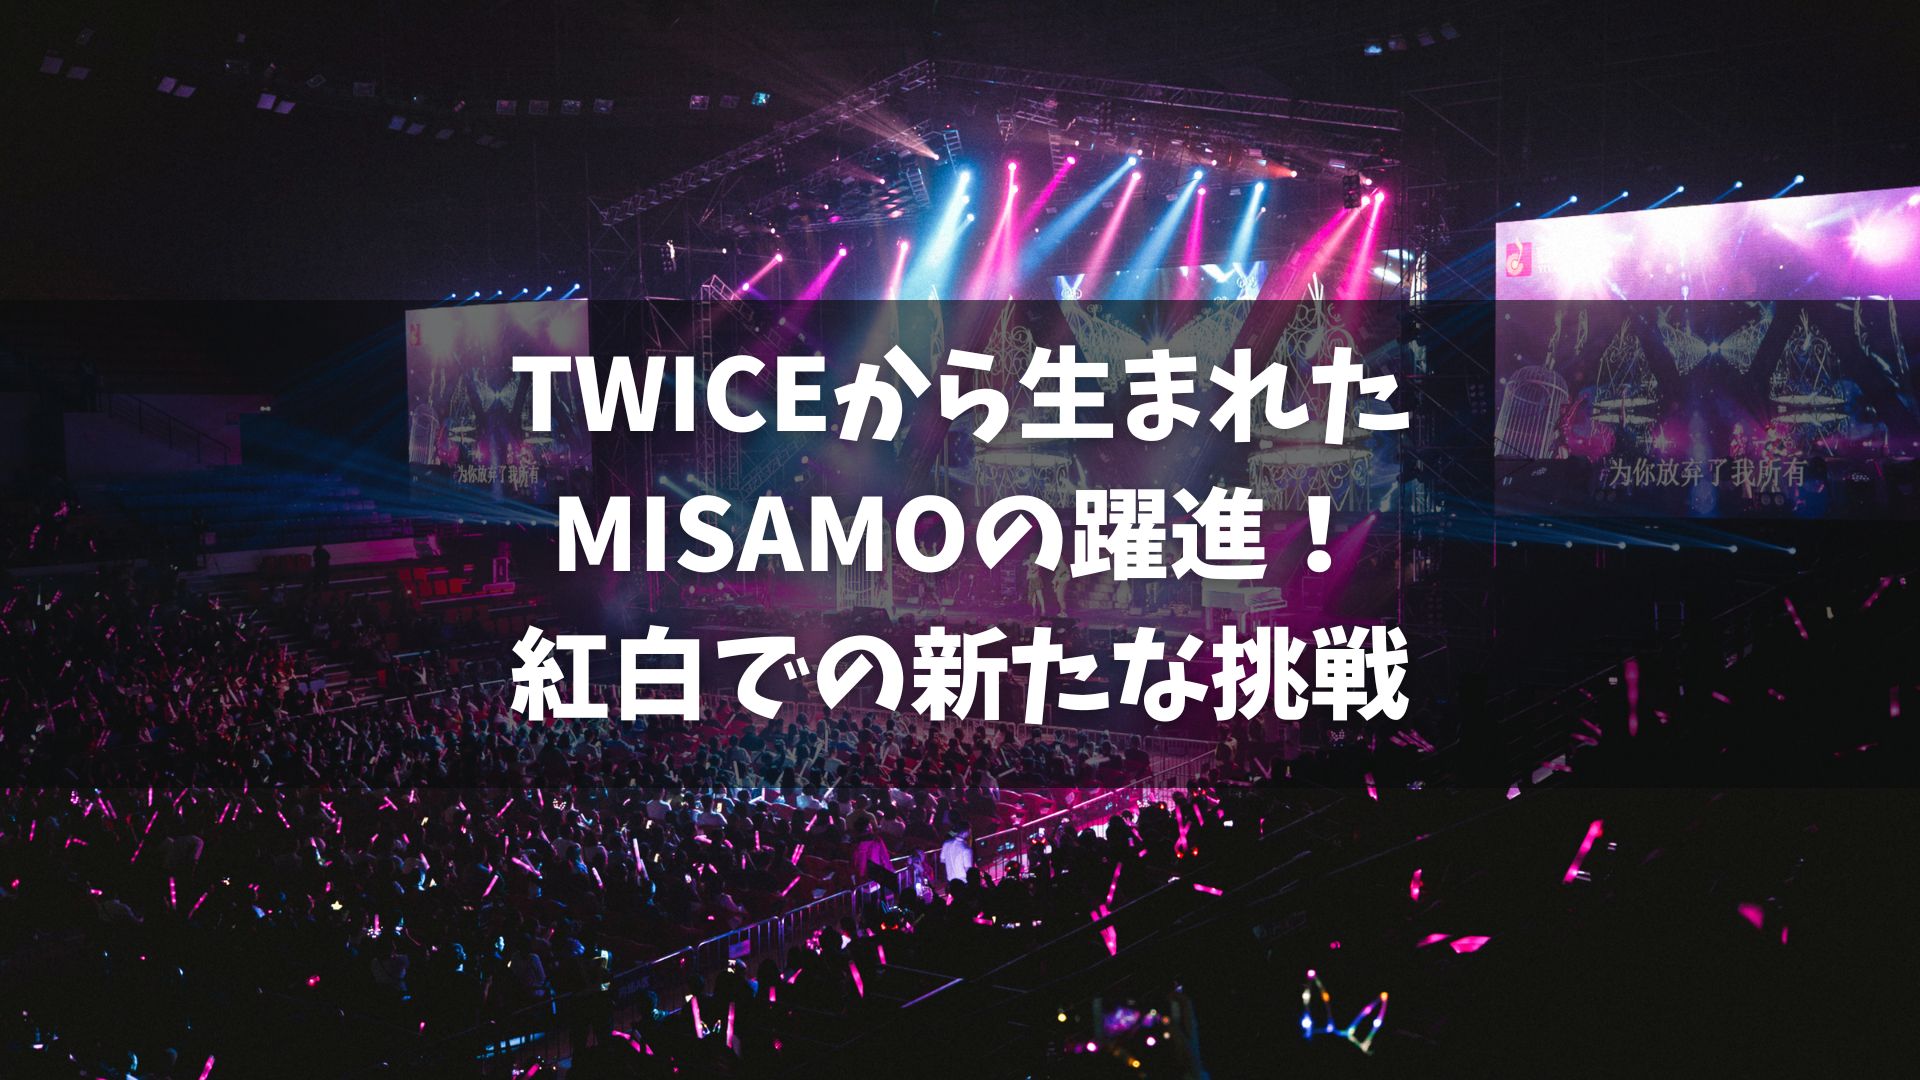 韓国の女性９人組グループ・TWICEの日本人メンバーで構成されたユニット「MISAMO」が、第74回NHK紅白歌合戦に初出場することが内定した。これは、グループとしては過去4回出場しているが、MISAMOとしては初めての出場となる。